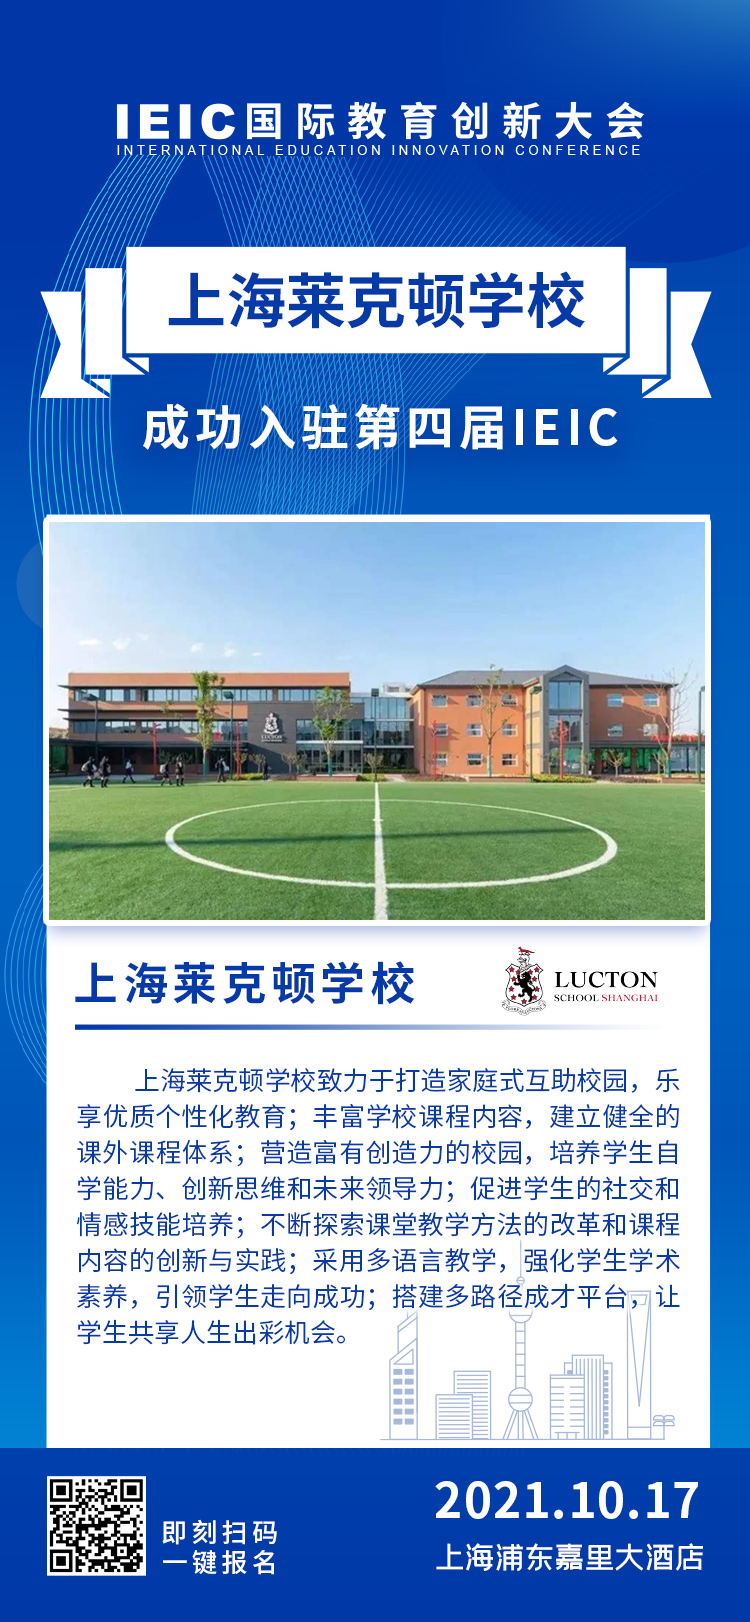 上海莱克顿学校|入驻参展2021年远播第四届IEIC国际教育创新大会